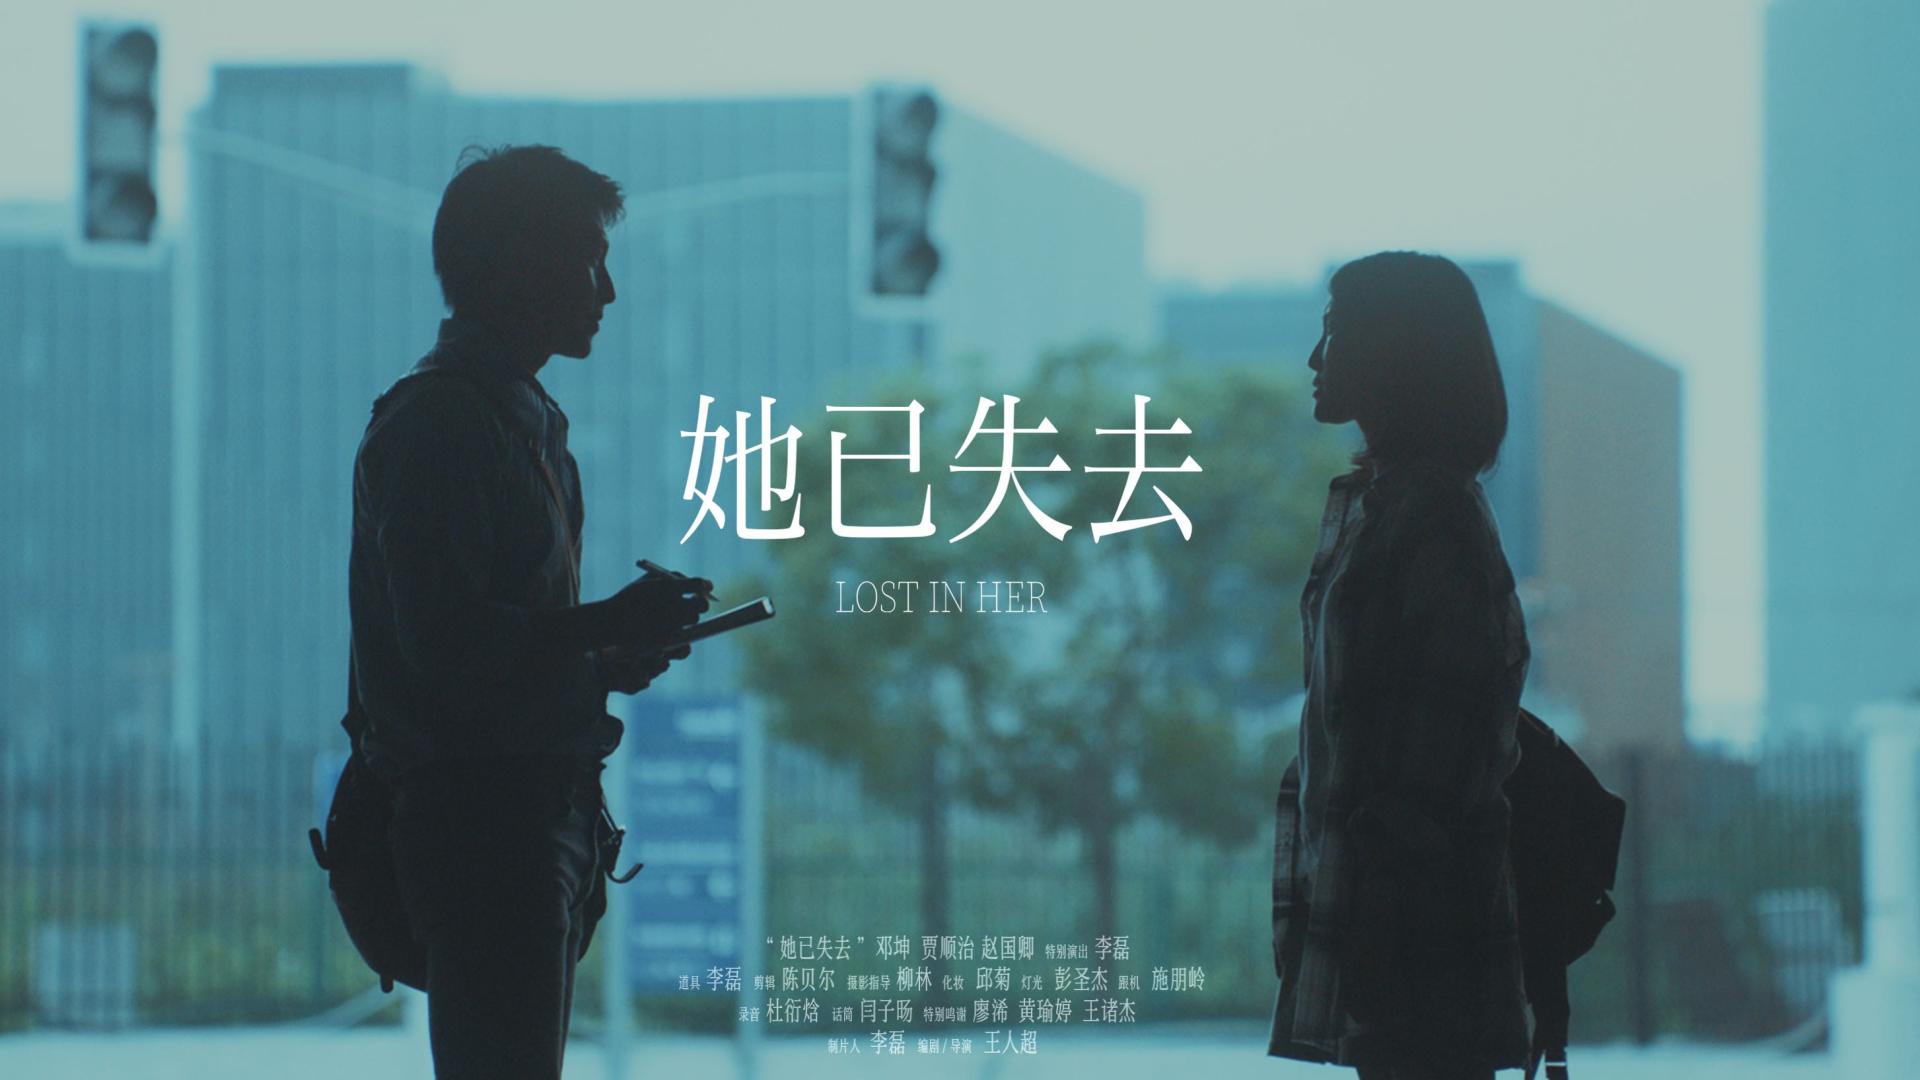 上海电影节48小时挑战赛短片《她已失去》